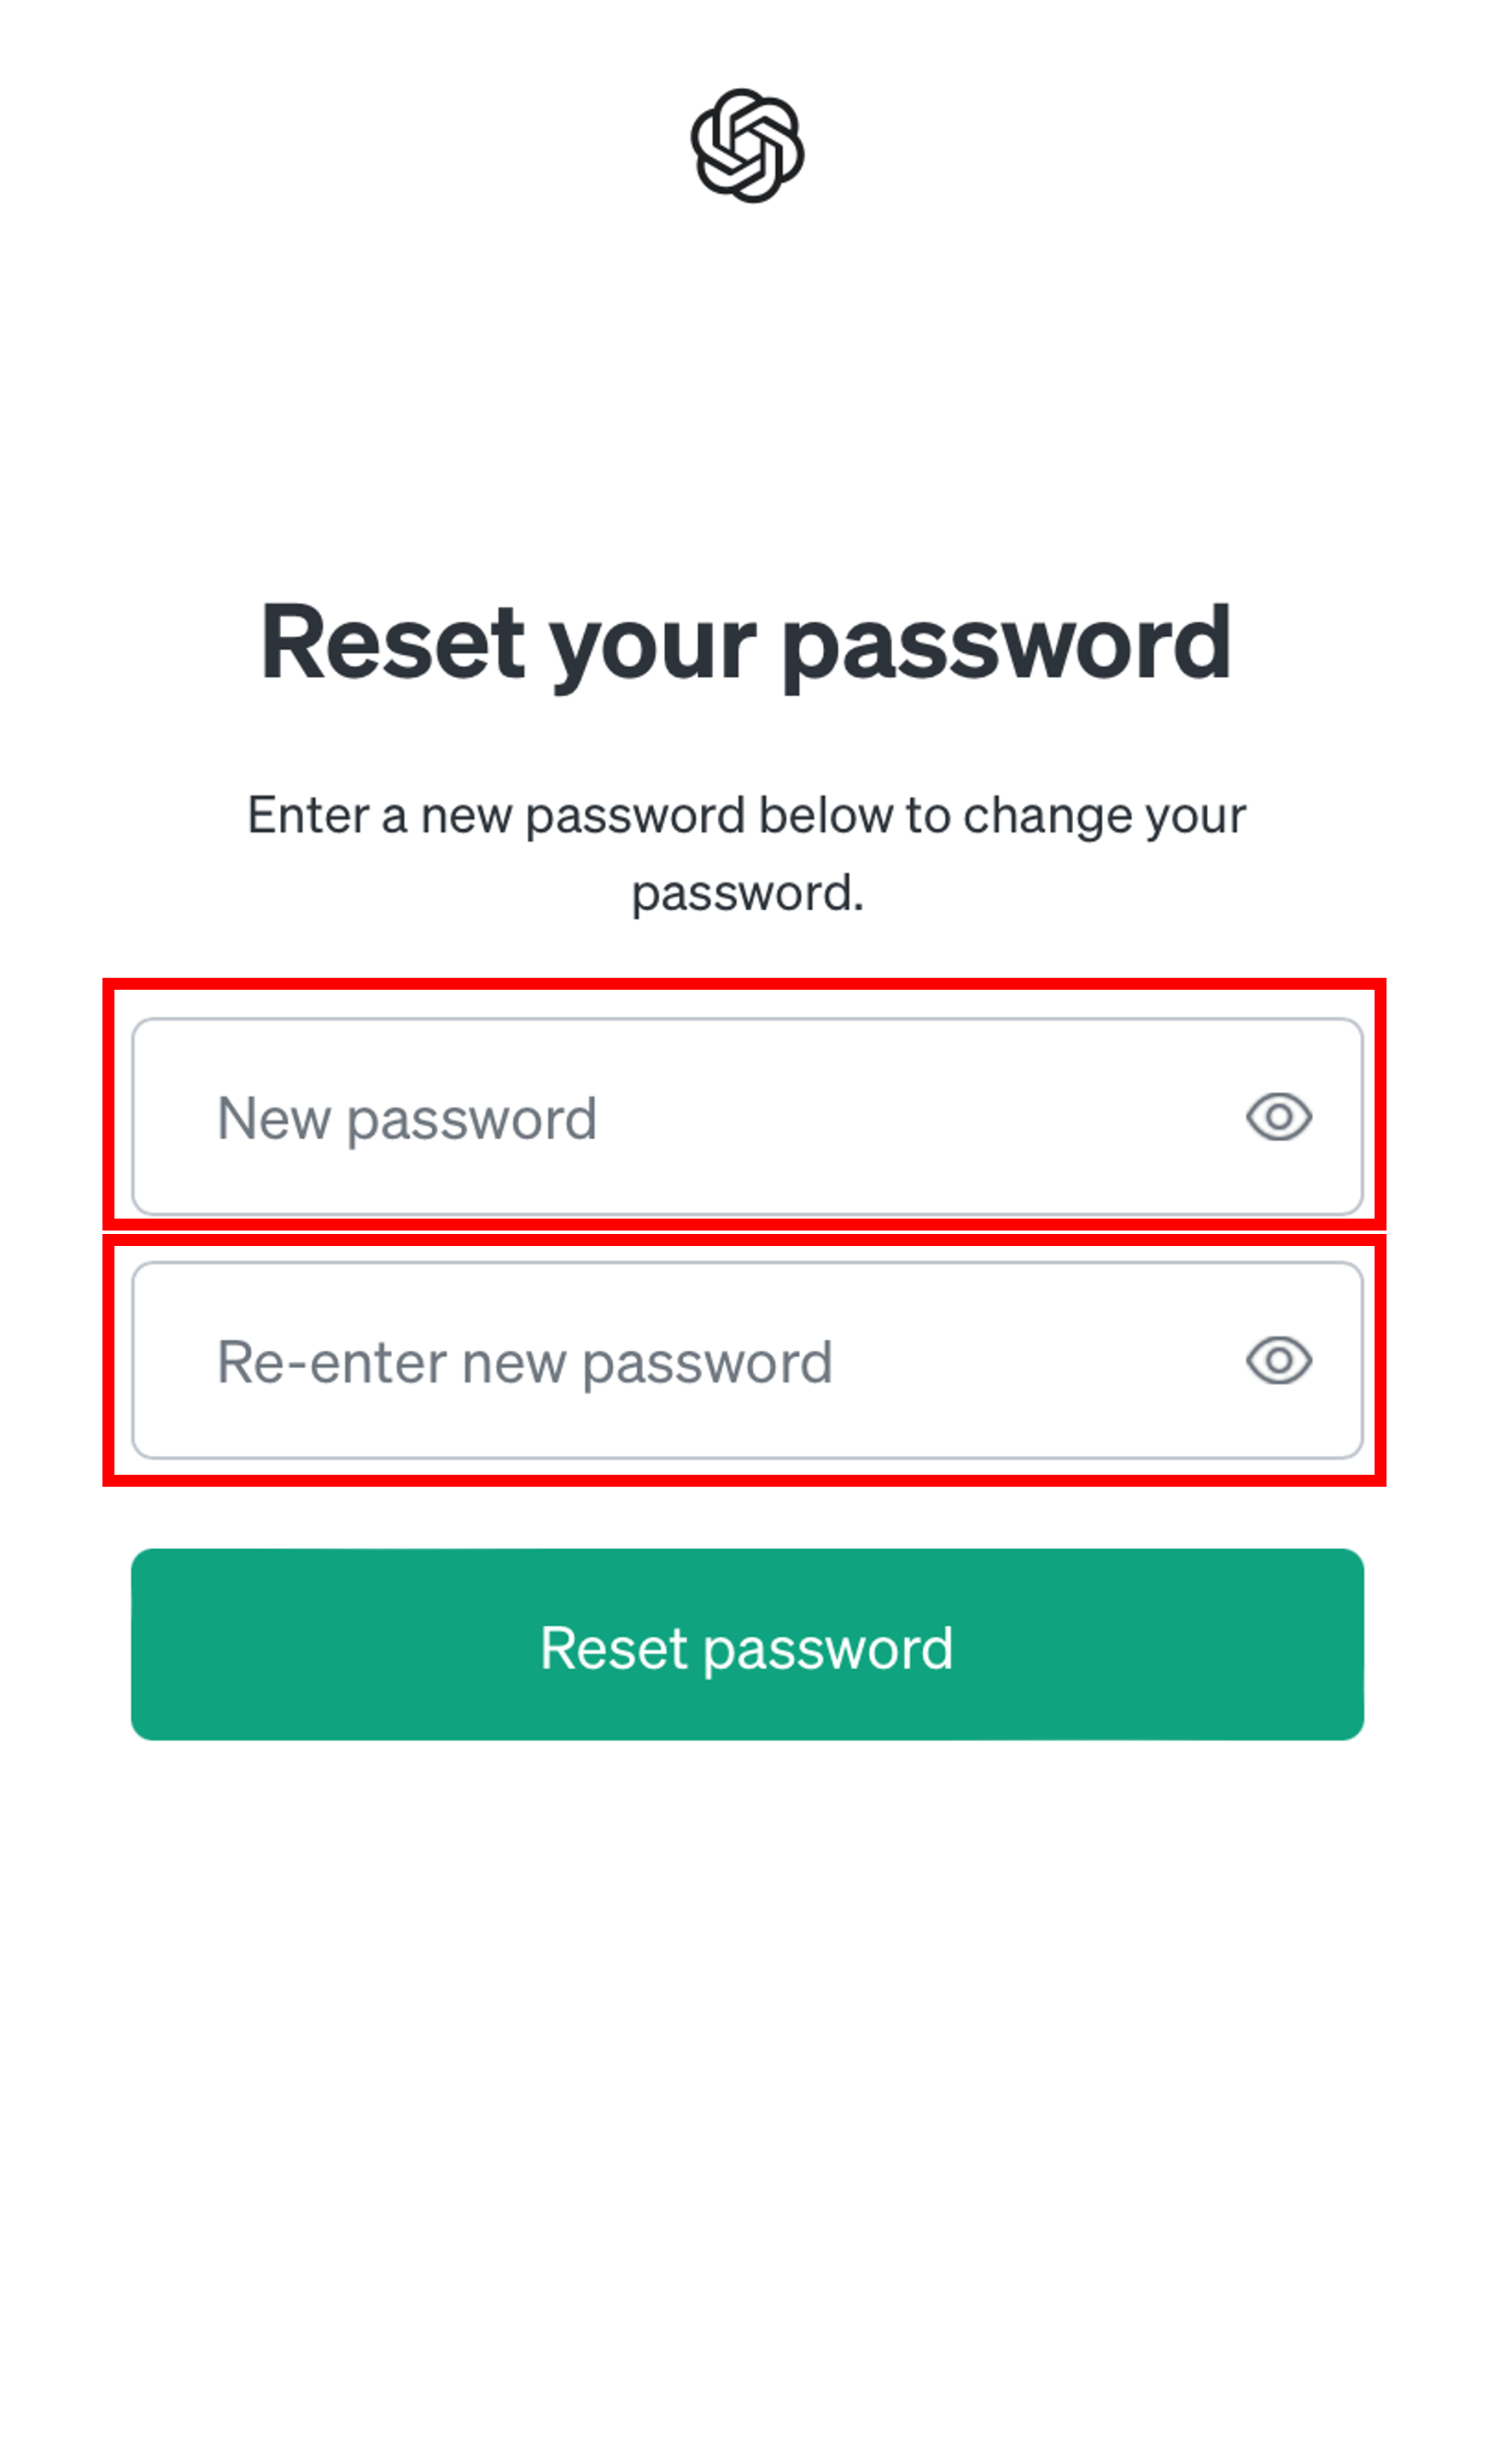 新しいパスワードを決めて入力、下段にももう一度同じパスワードを入力する場面のスクリーンショット